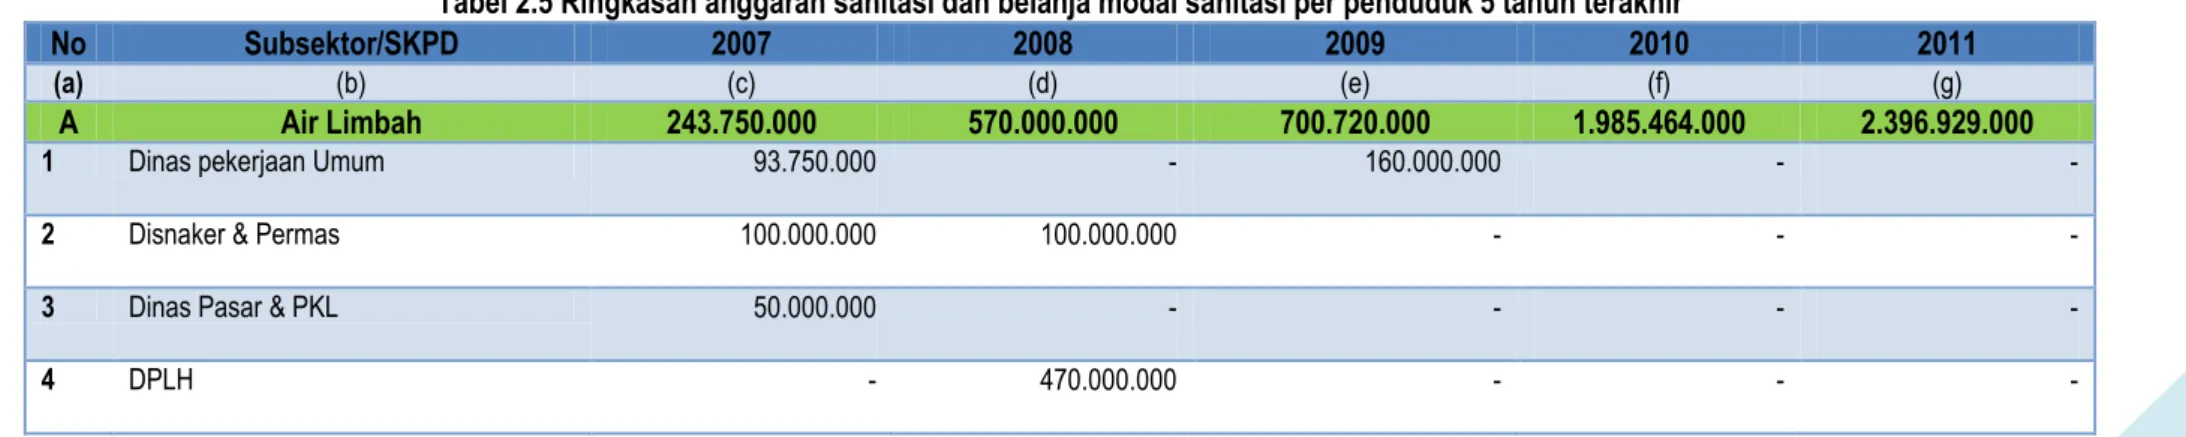 Tabel 2.5 Ringkasan anggaran sanitasi dan belanja modal sanitasi per penduduk 5 tahun terakhir 